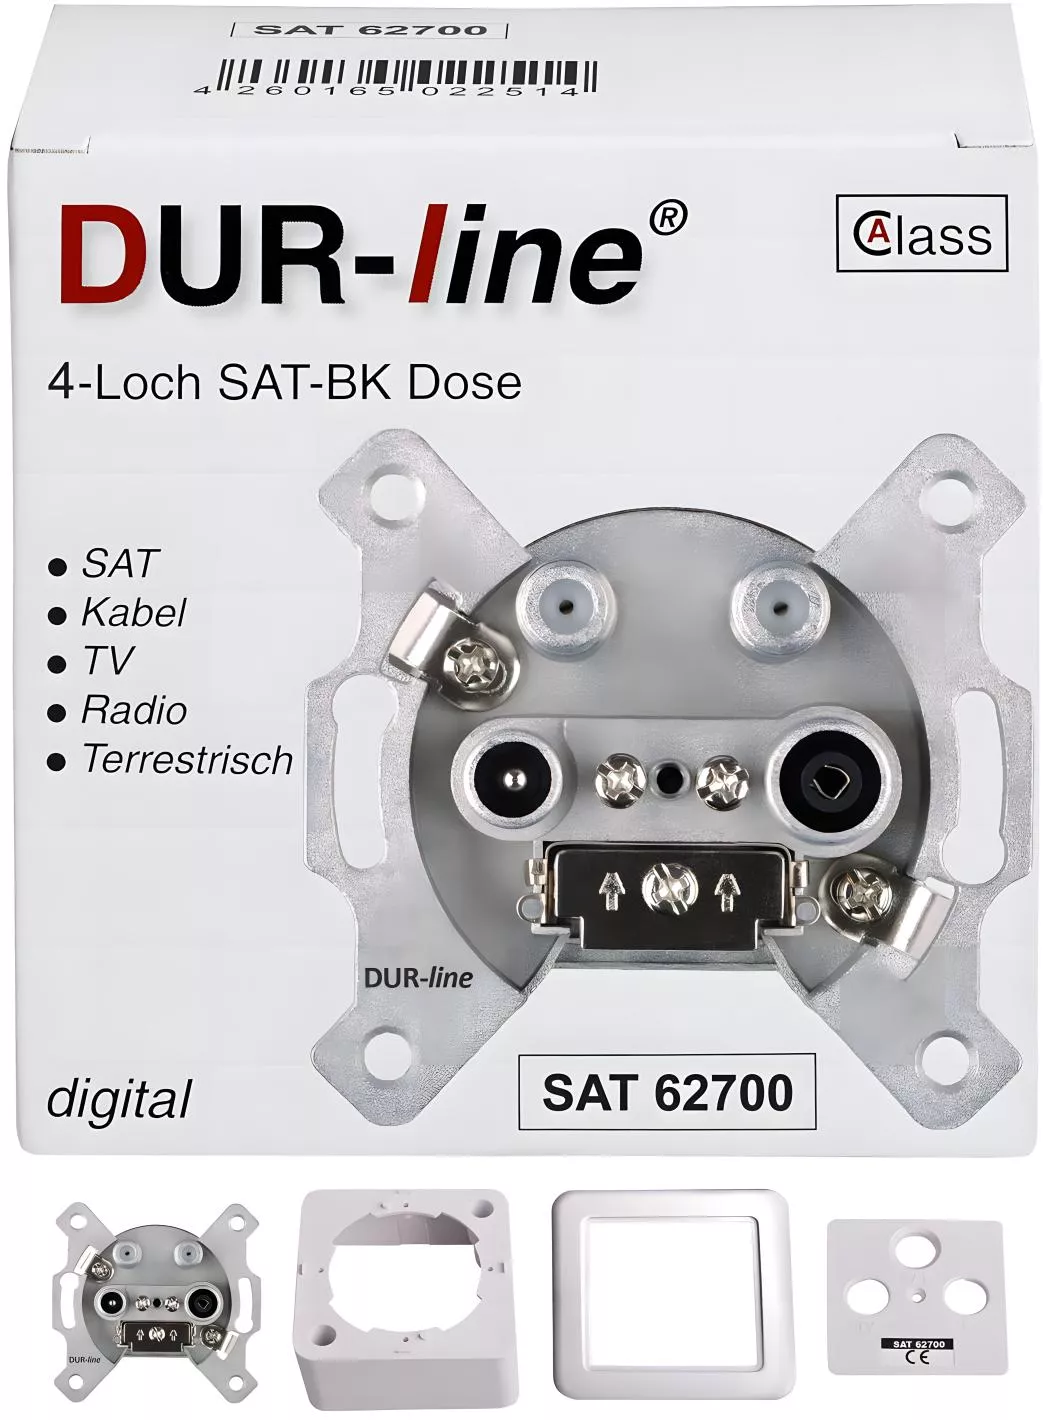 DUR-line SAT 62700 SAT-BK-Dose 4-Loch Enddose-Artikelnummer-056 000 21-von-DUR-line